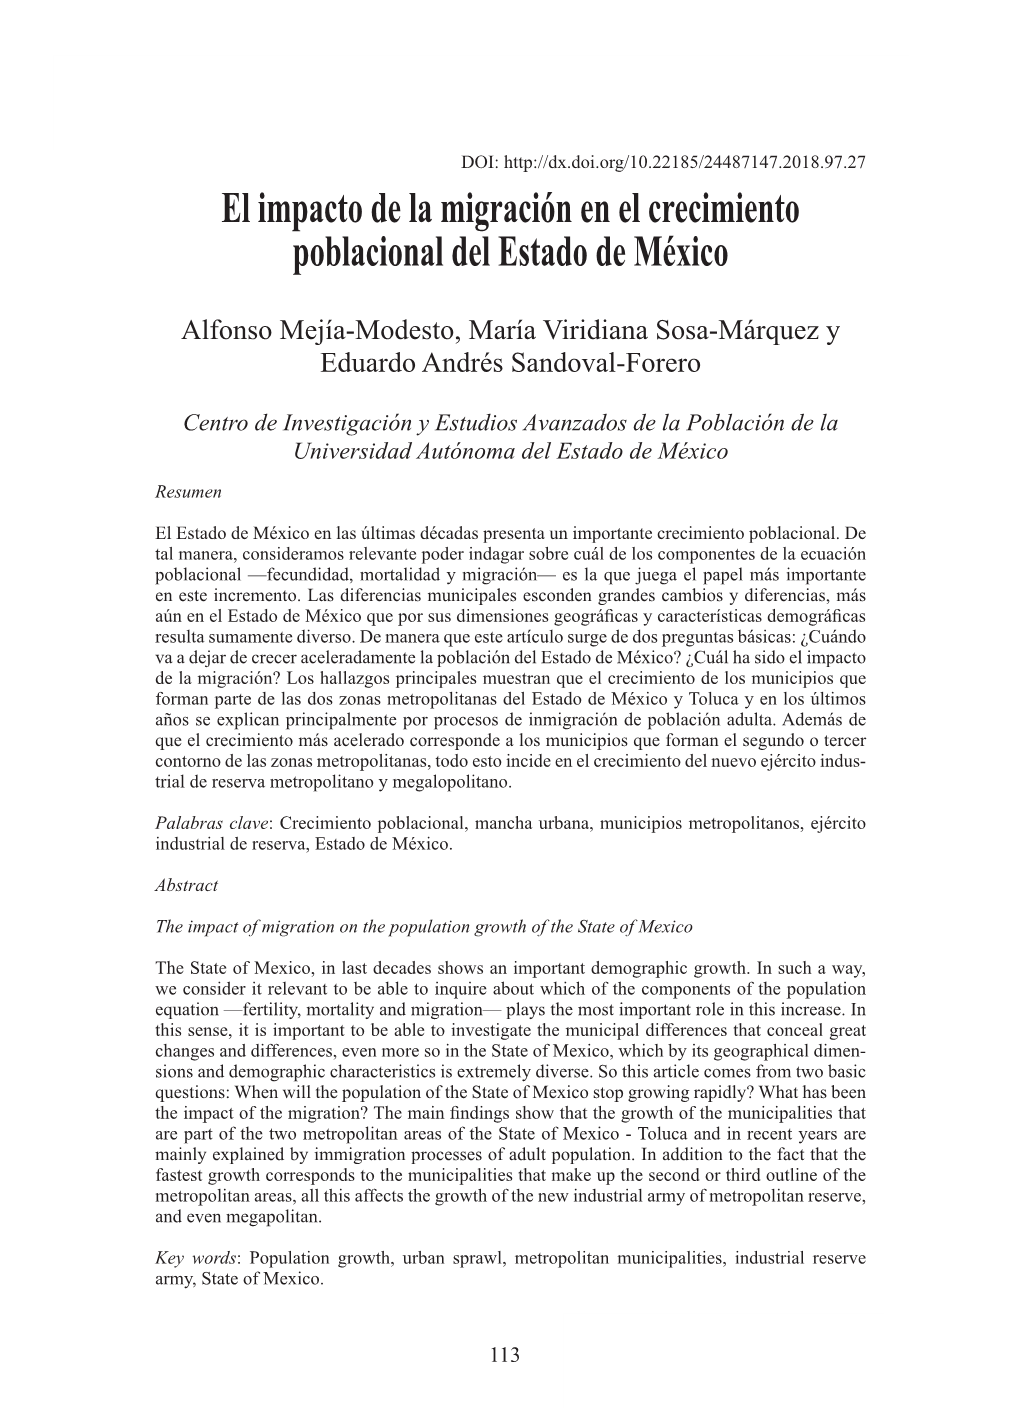 El Impacto De La Migración En El Crecimiento Poblacional Del Estado De México / A